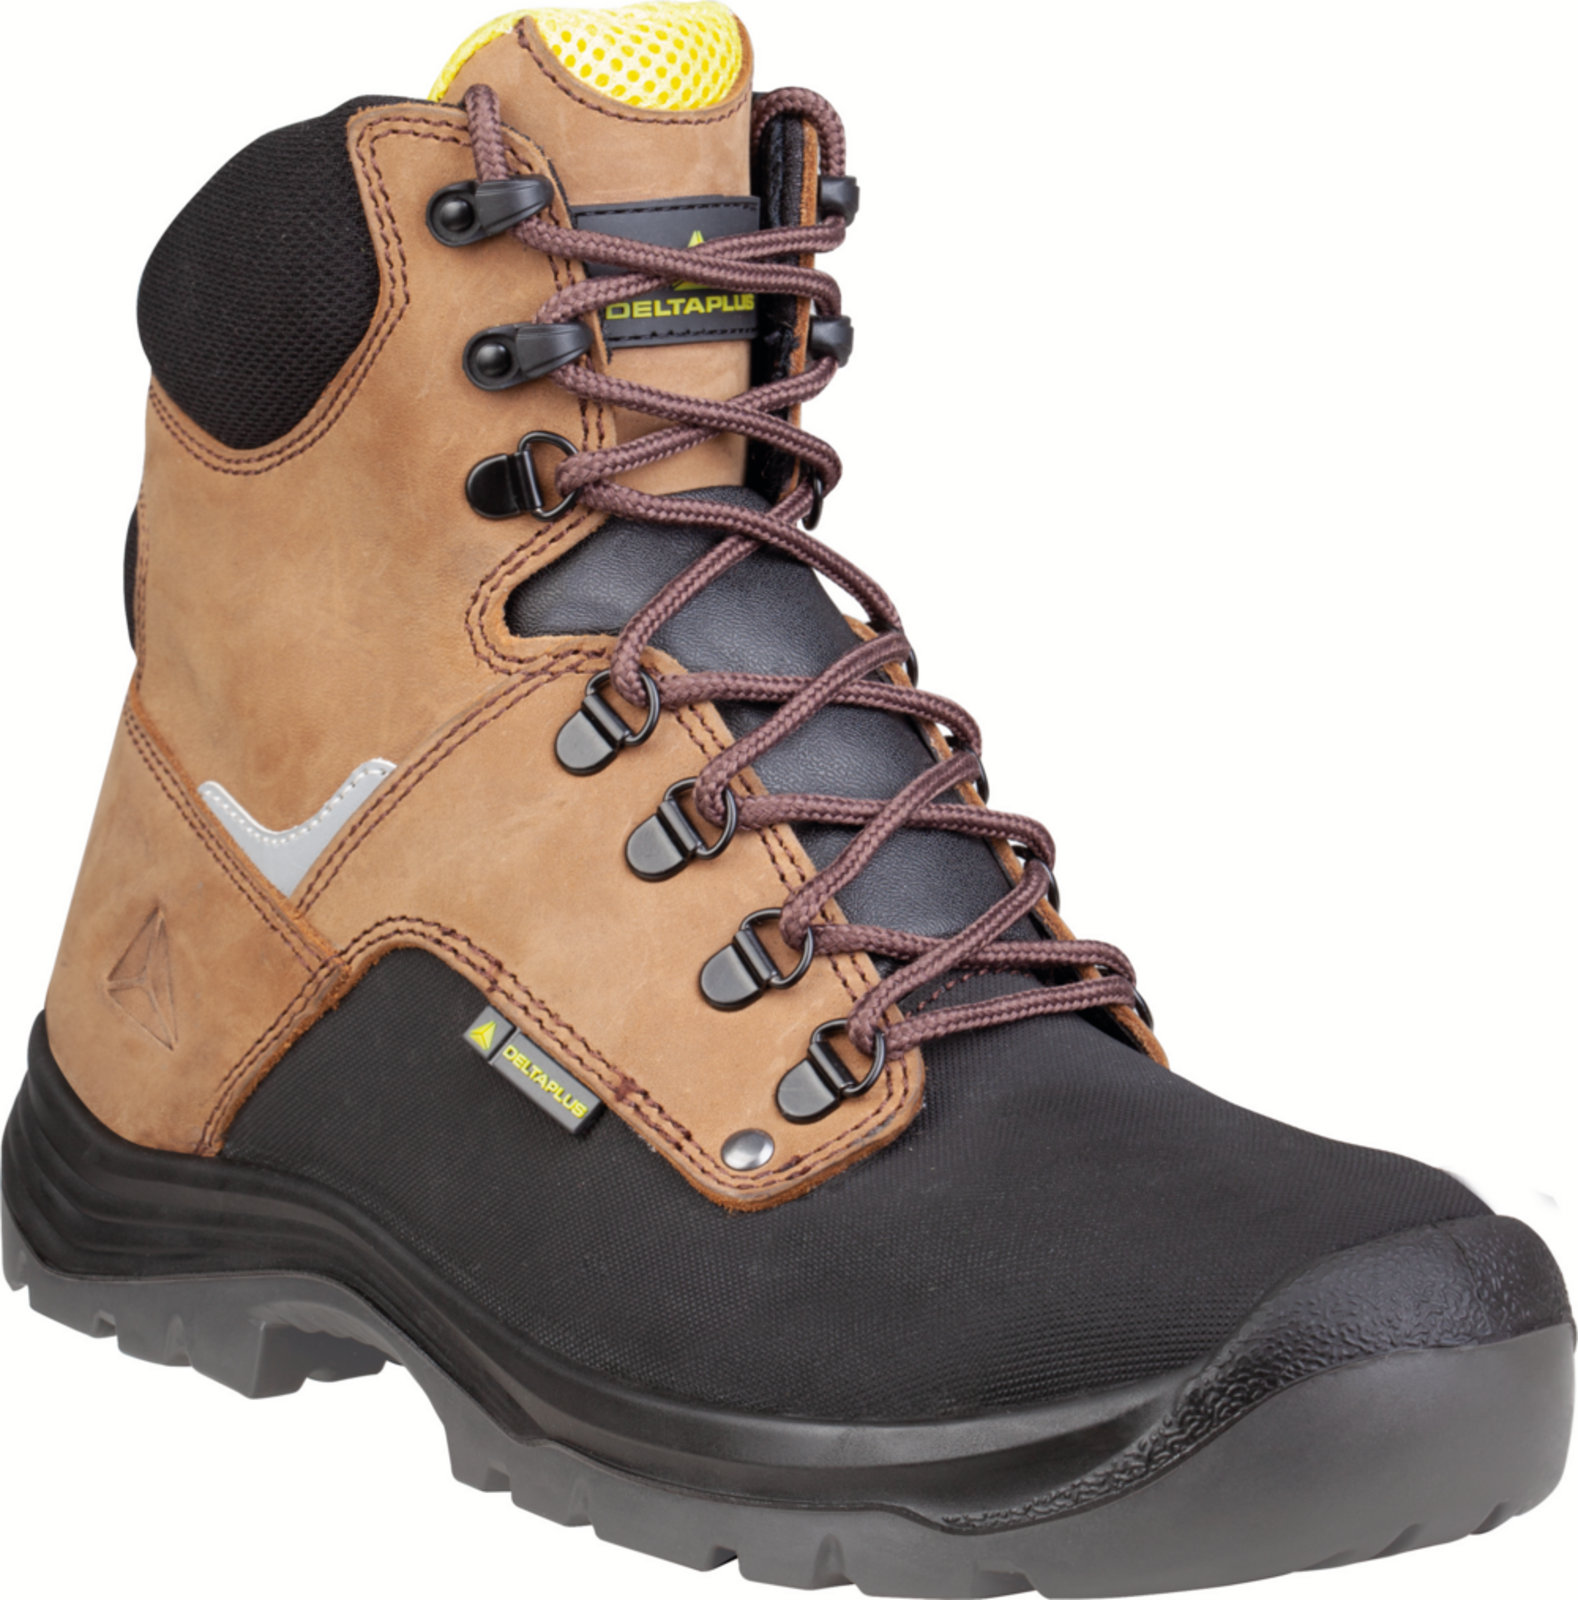 Vysoká bezpečnostná obuv Delta Plus Atacama S3 - veľkosť: 47, farba: hnedá/čierna